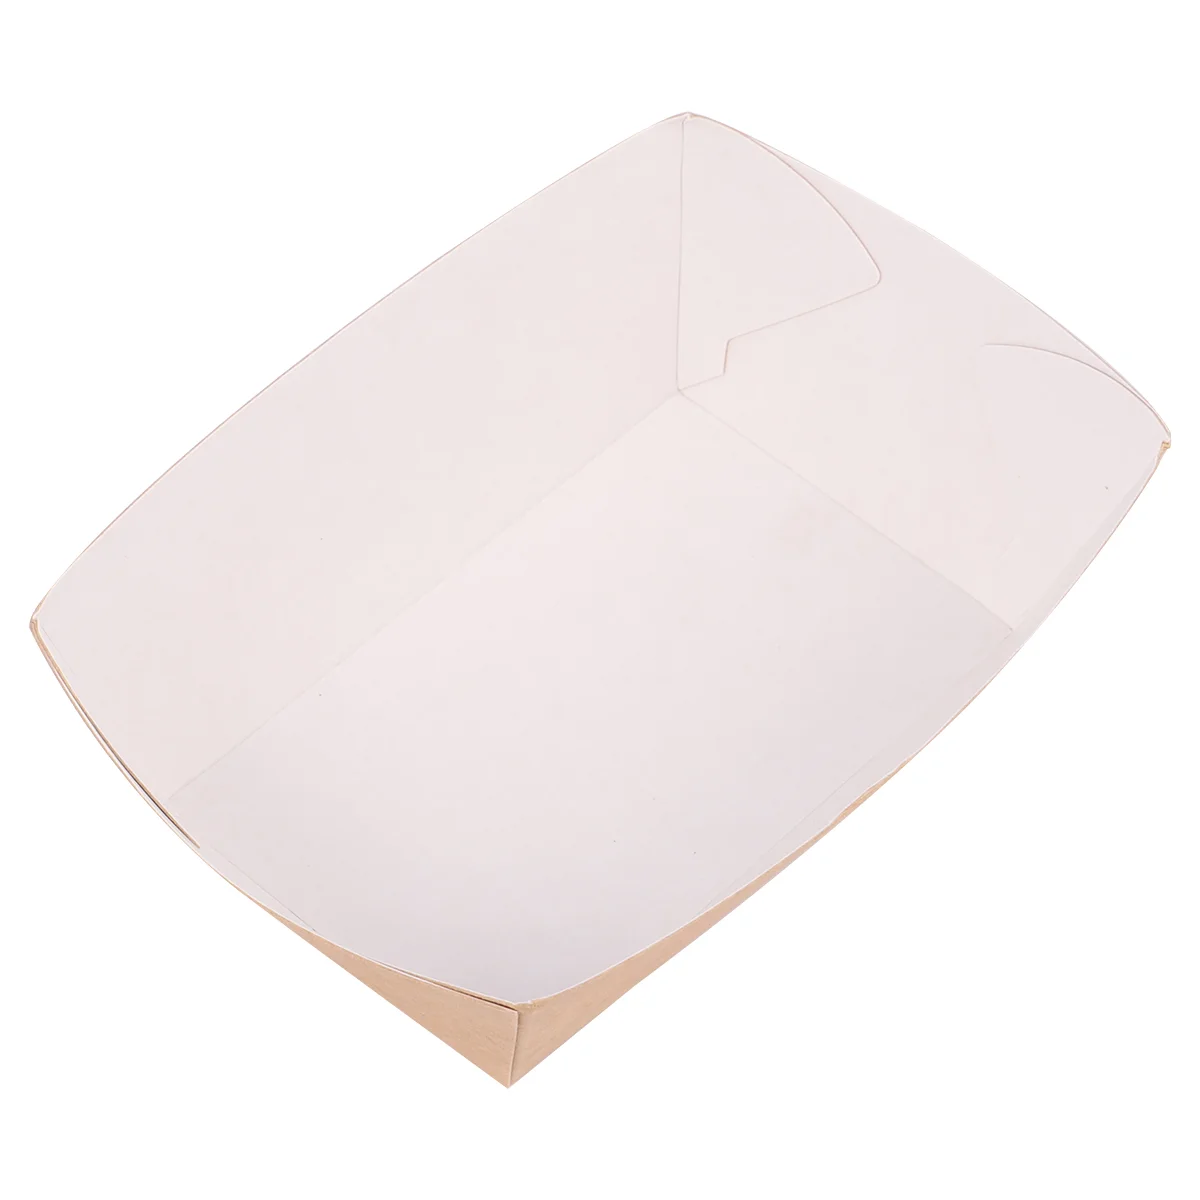 

100 шт. Одноразовый бумажный поднос для подачи пищи, коробка из крафтовой бумаги для выноса, лодочная коробка для закусок, лоток для хранения картофеля фри, курицы